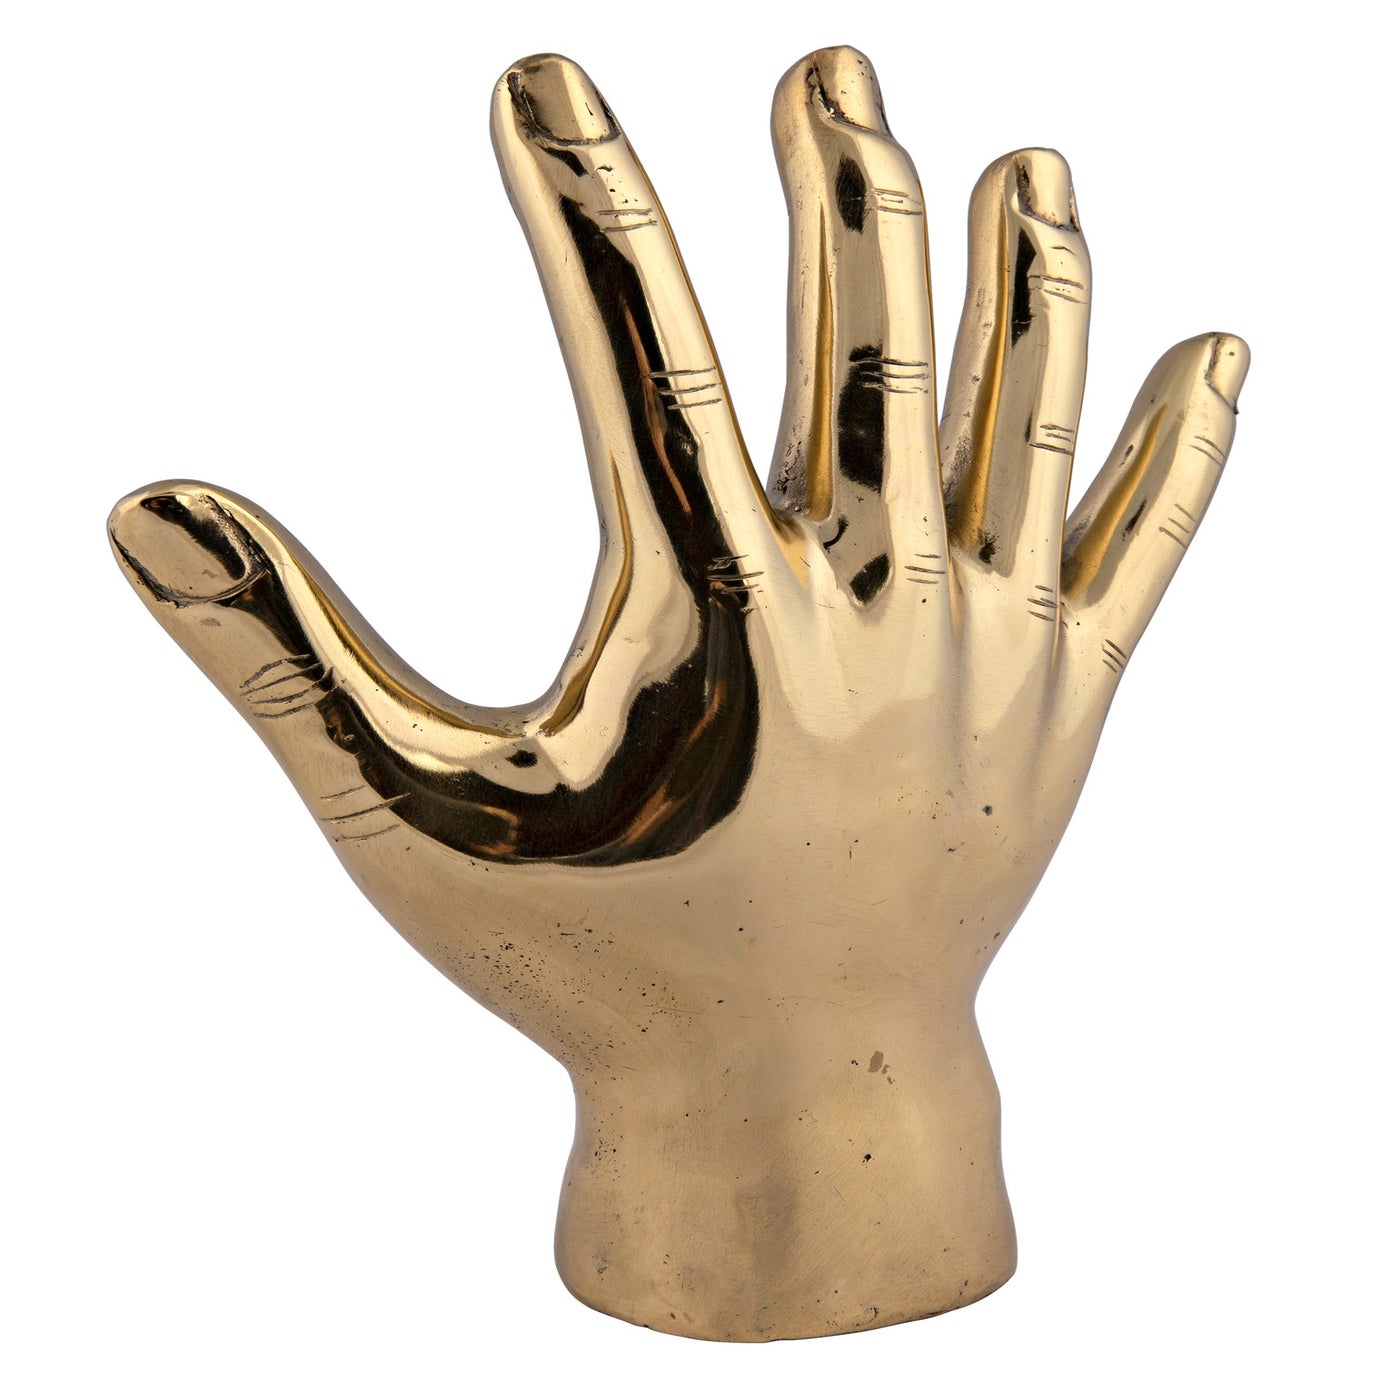 Brass Hands Sculptures - The Cool Hunter Journal